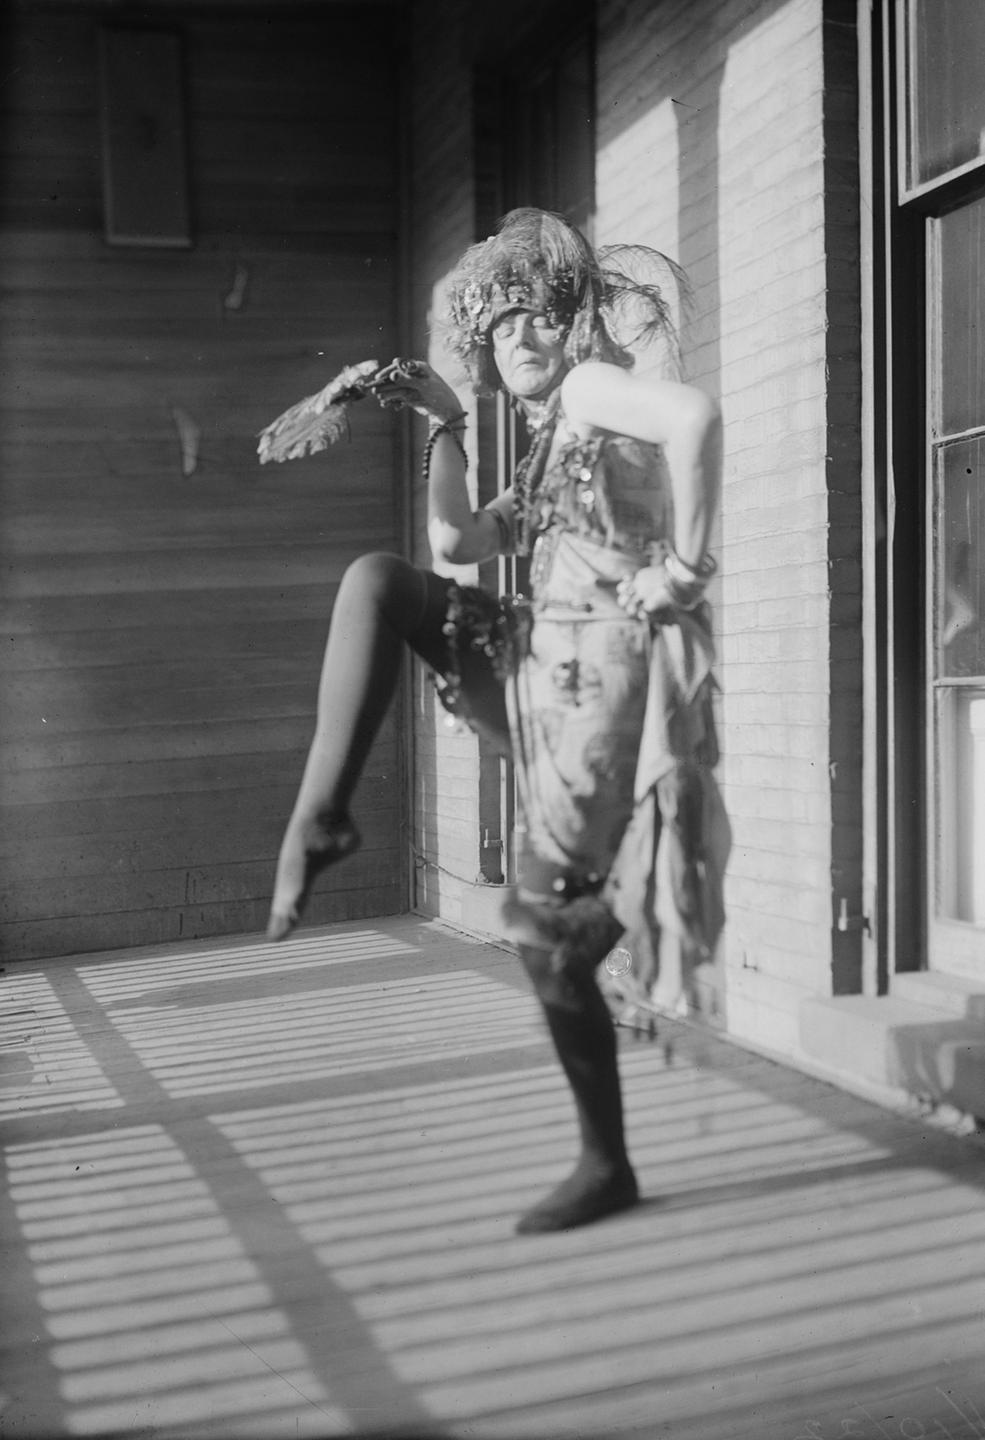 Schwarz-Weiß-Fotografie der Dada-Künstlerin Baroness Elsa Freytag-Loringhoven, bei einer Performance mit Kopfschmuck, ca. 1922